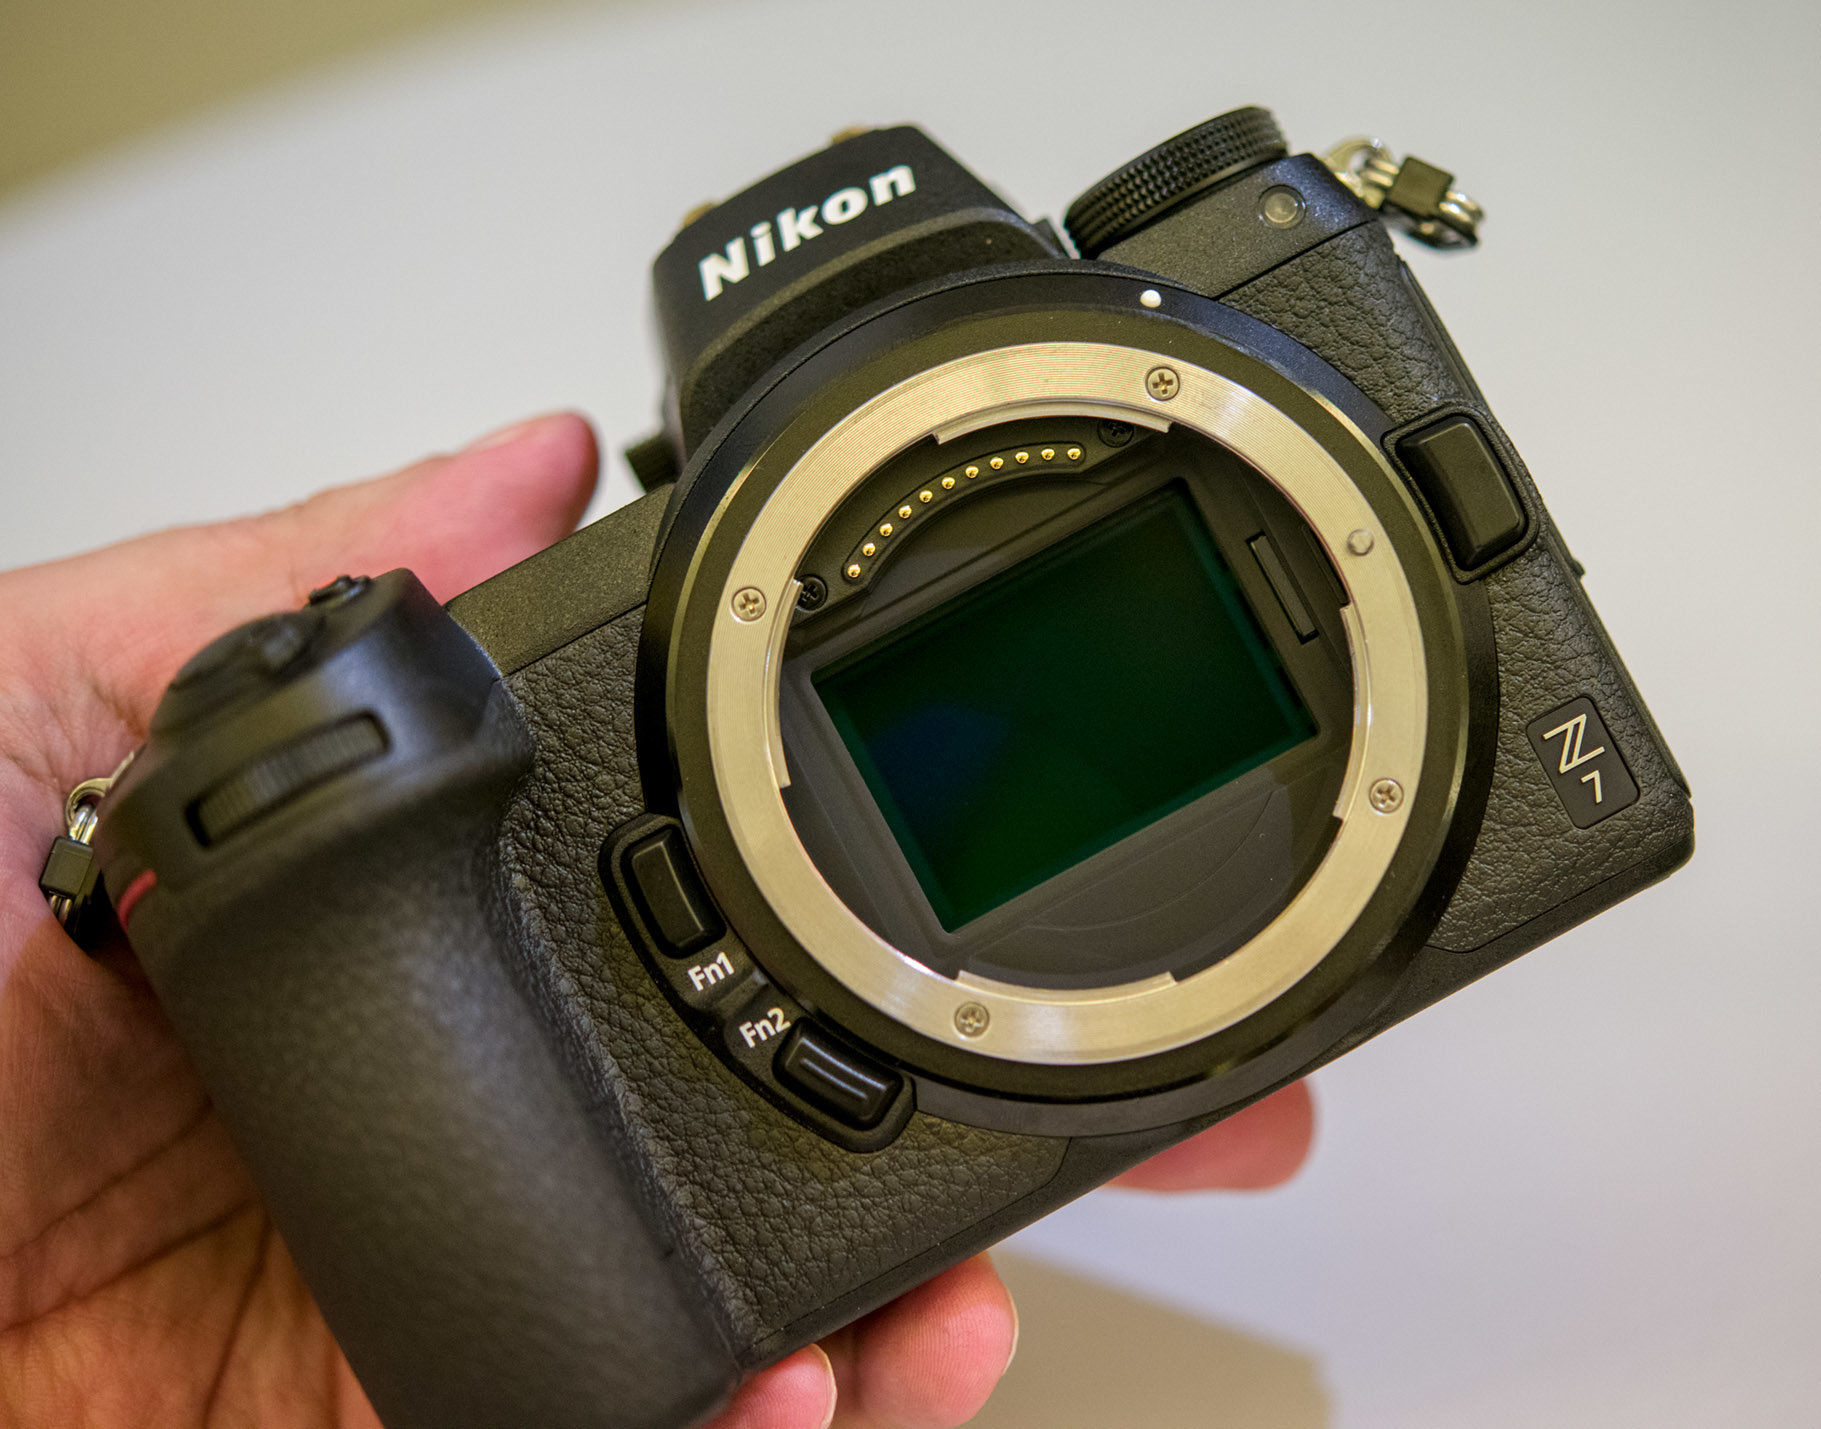 Maggiori informazioni su "Nikon Z7 prime impressioni"